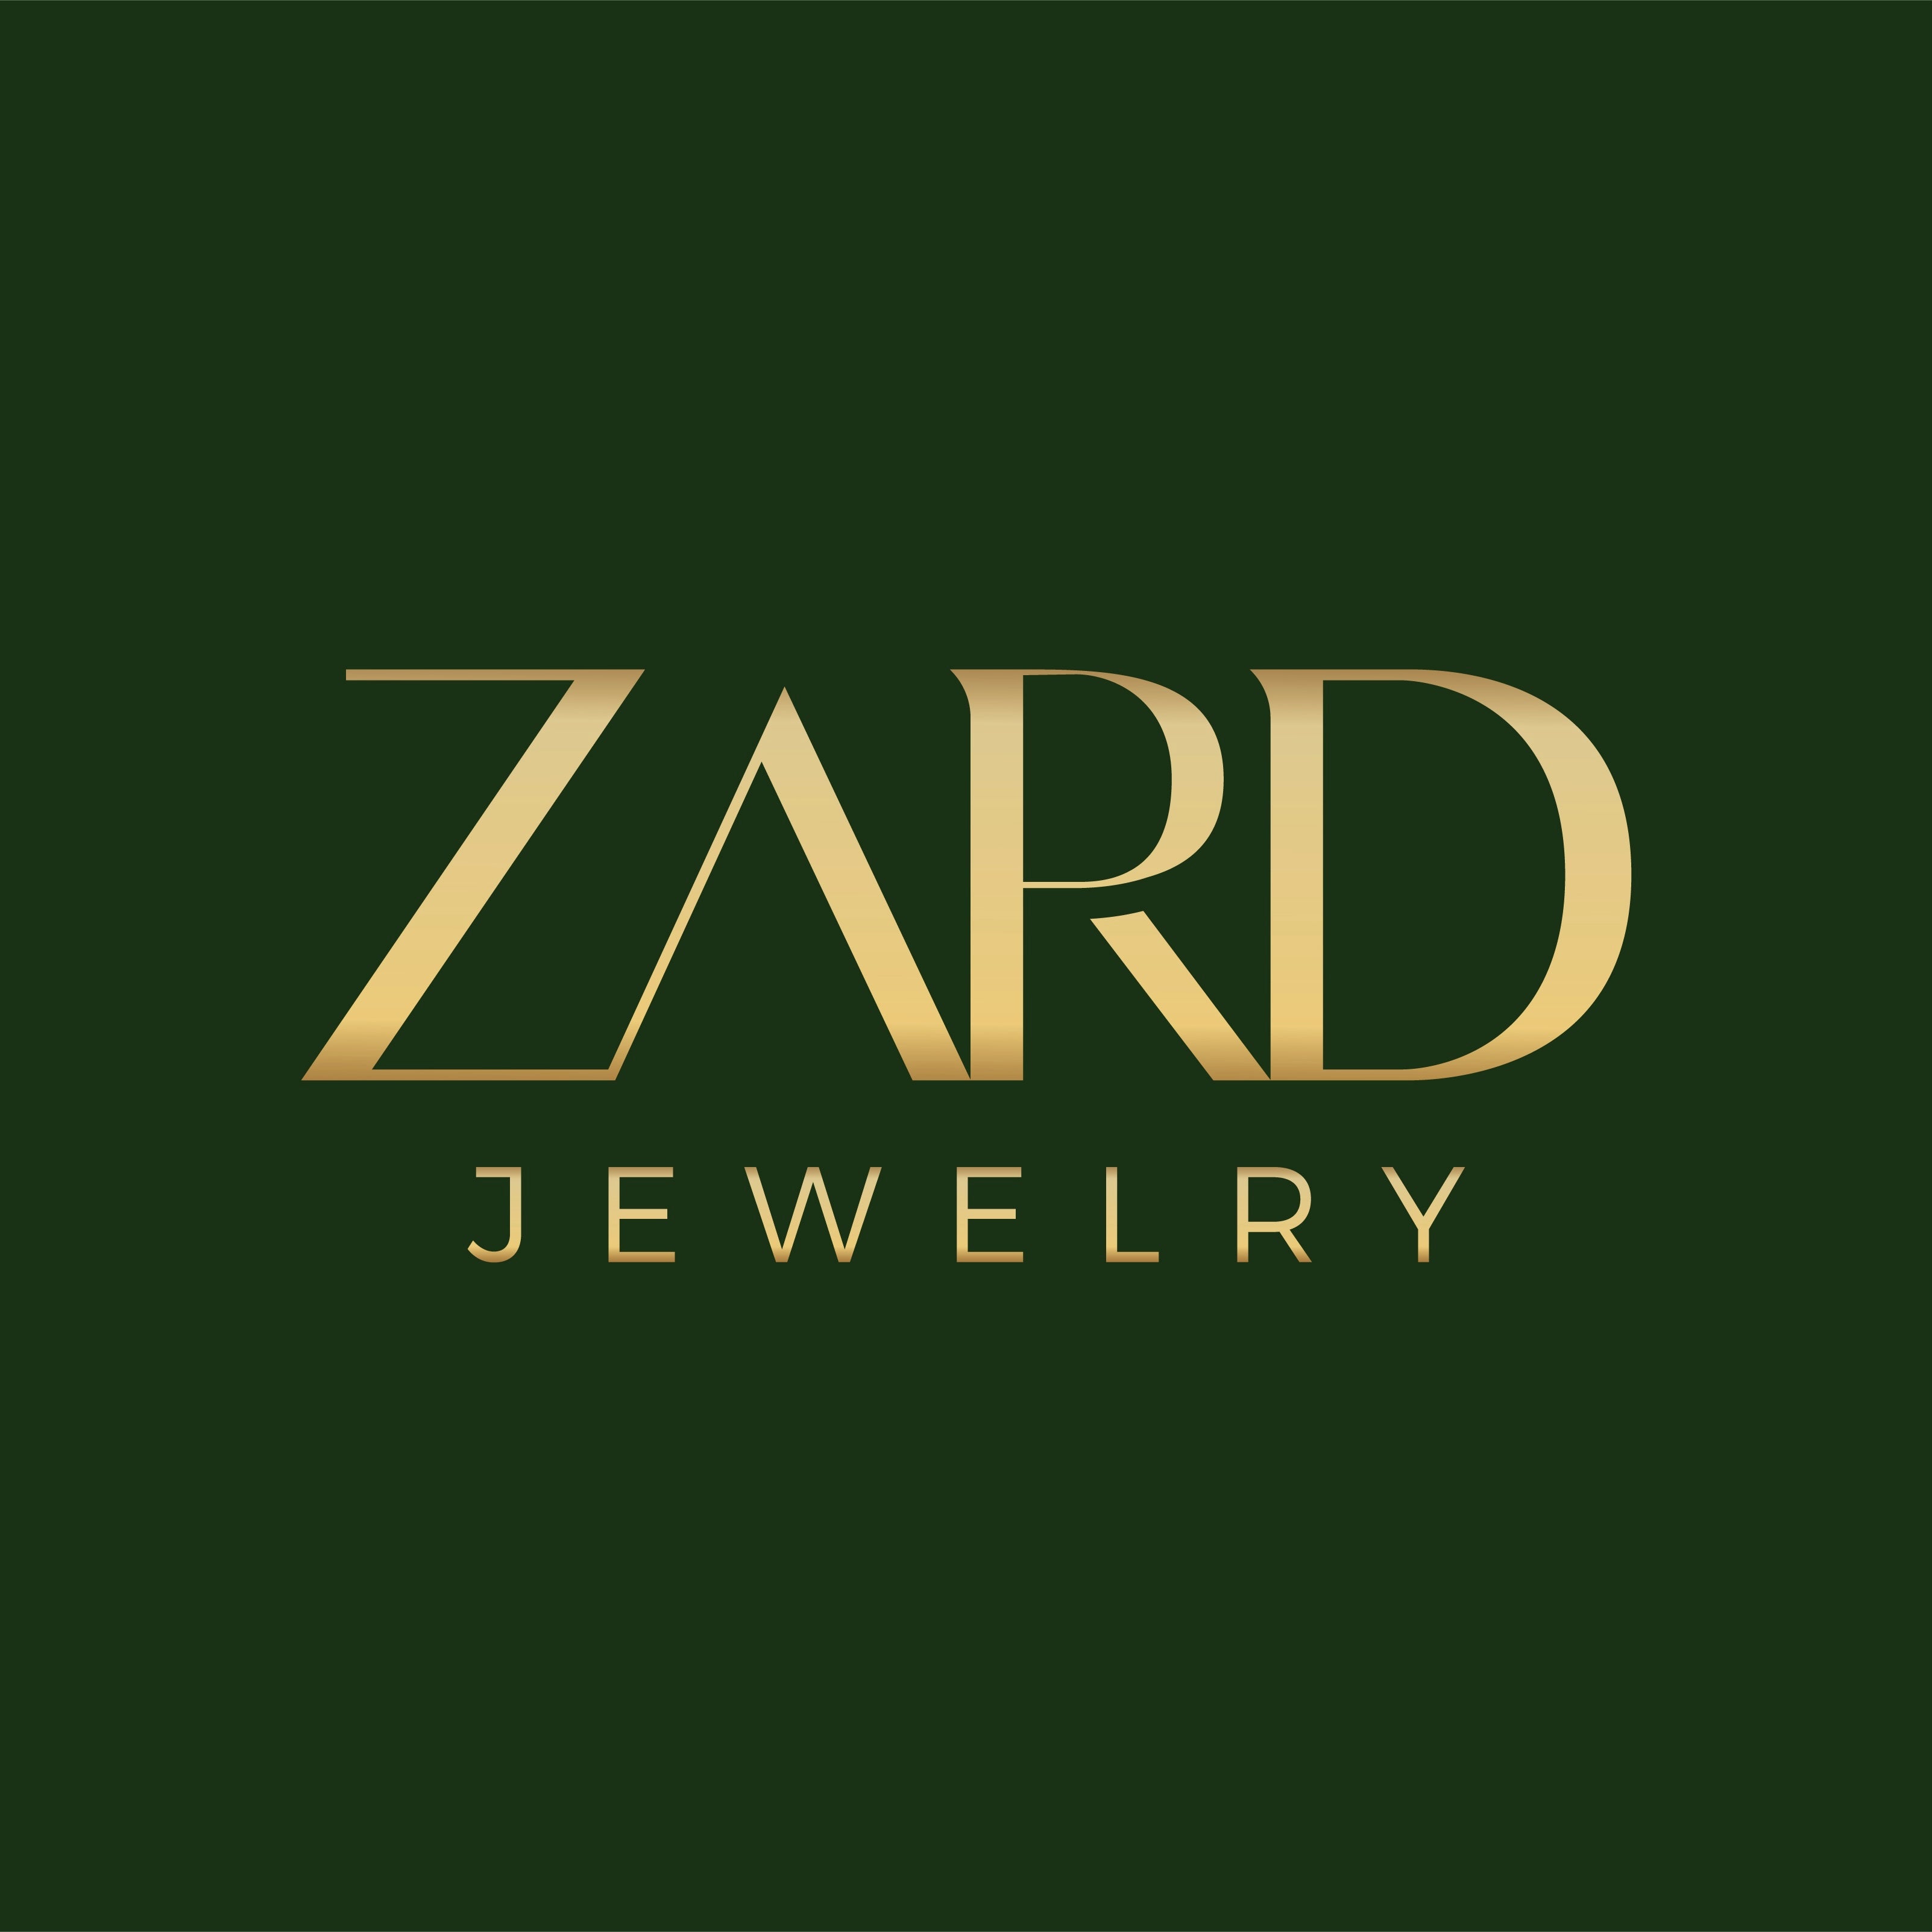 Zard Jewelry